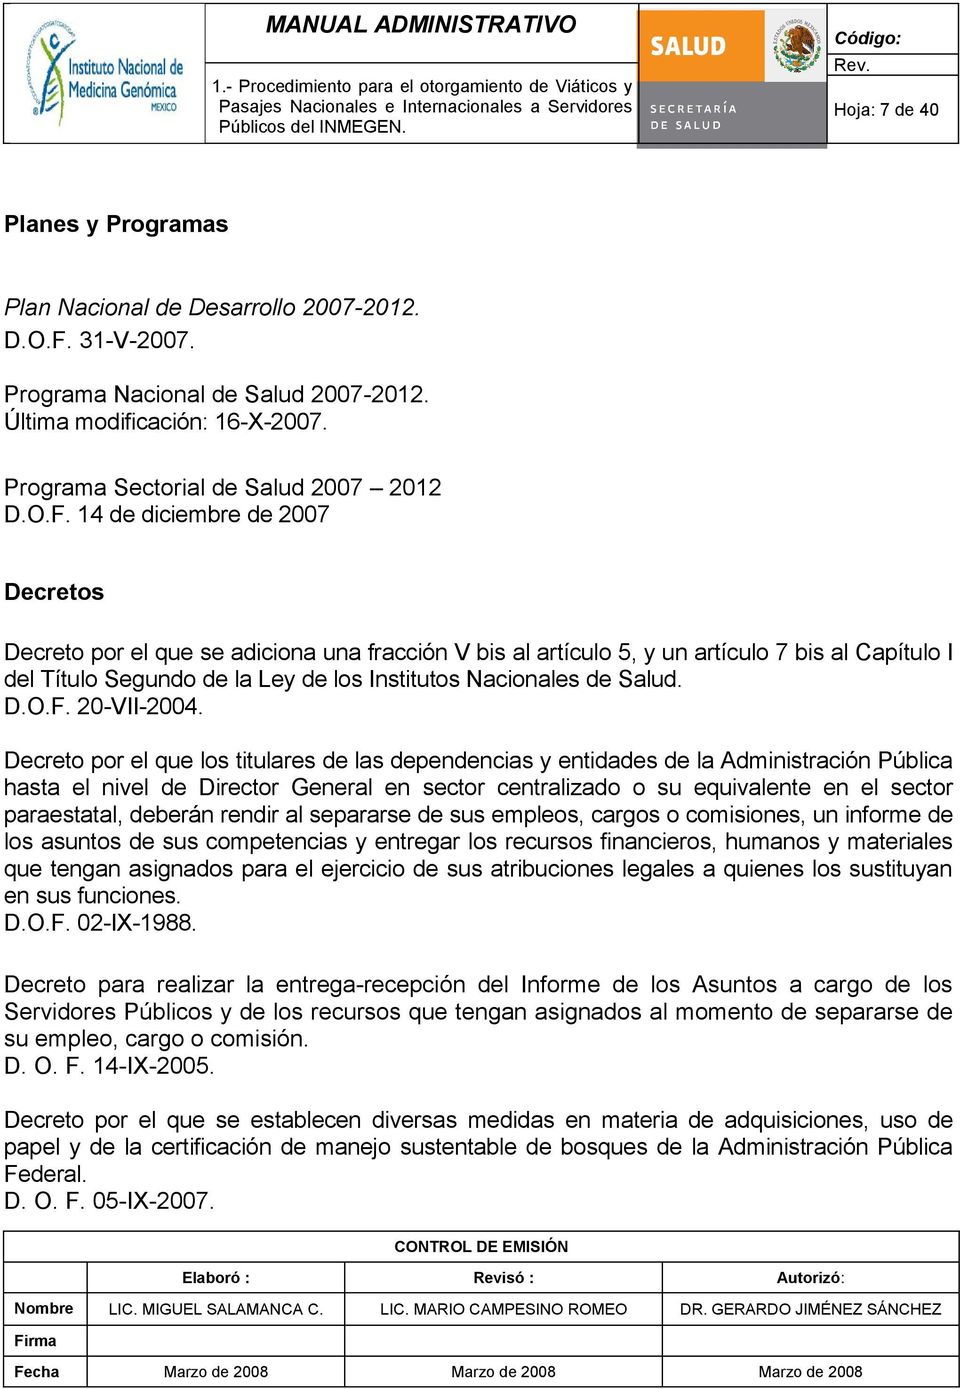 Salud. D.O.F. 20-VII-2004.